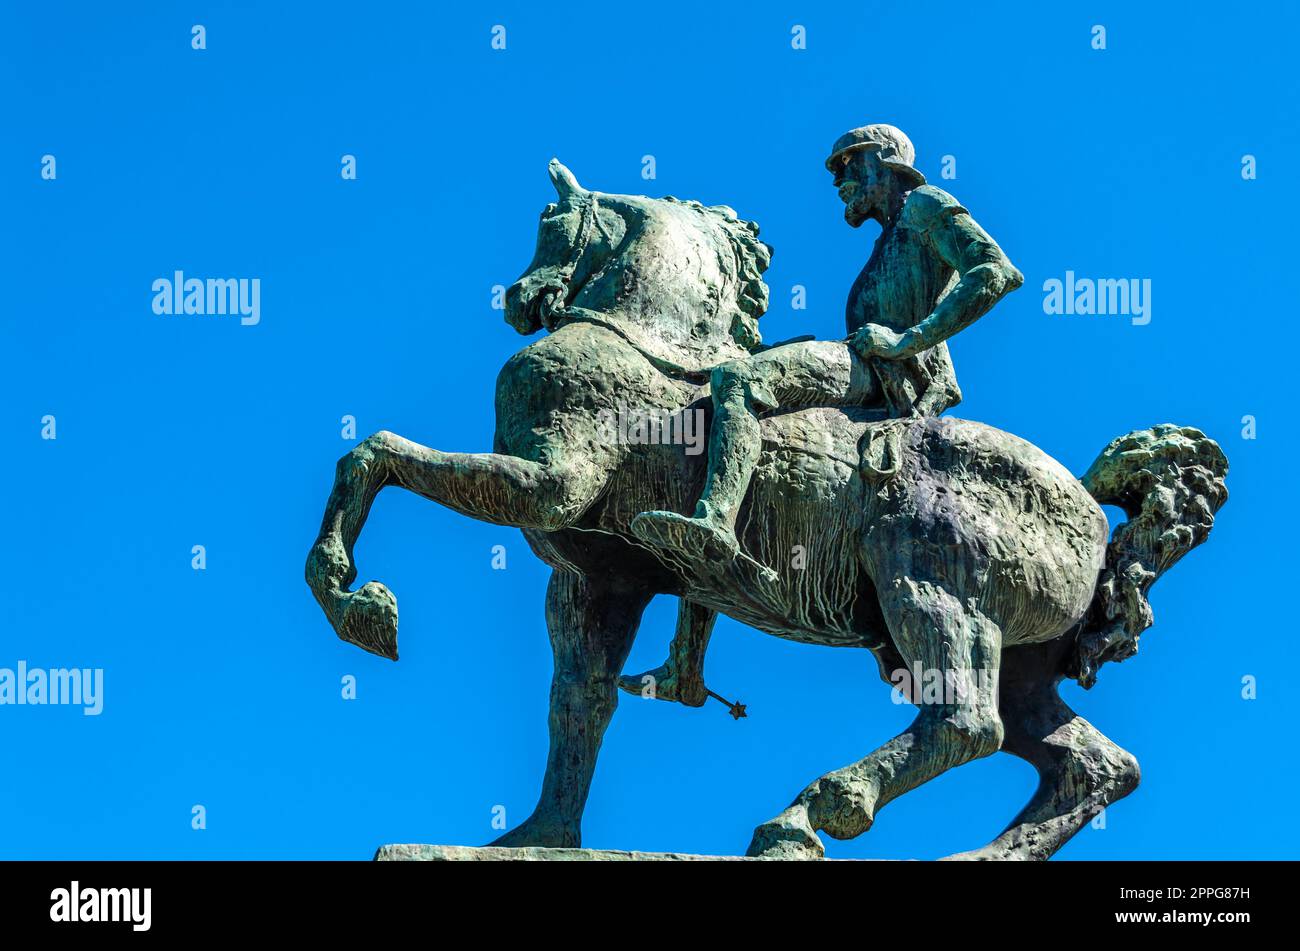 ZURIGO, SVIZZERA - 3 SETTEMBRE 2013: Statua di Hans Waldmann a Zurigo, Svizzera, realizzata dallo scultore Hermann Haller nel 1937. Hans Waldmann (1435 - 1489) è stato sindaco di Zurigo e leader militare svizzero Foto Stock